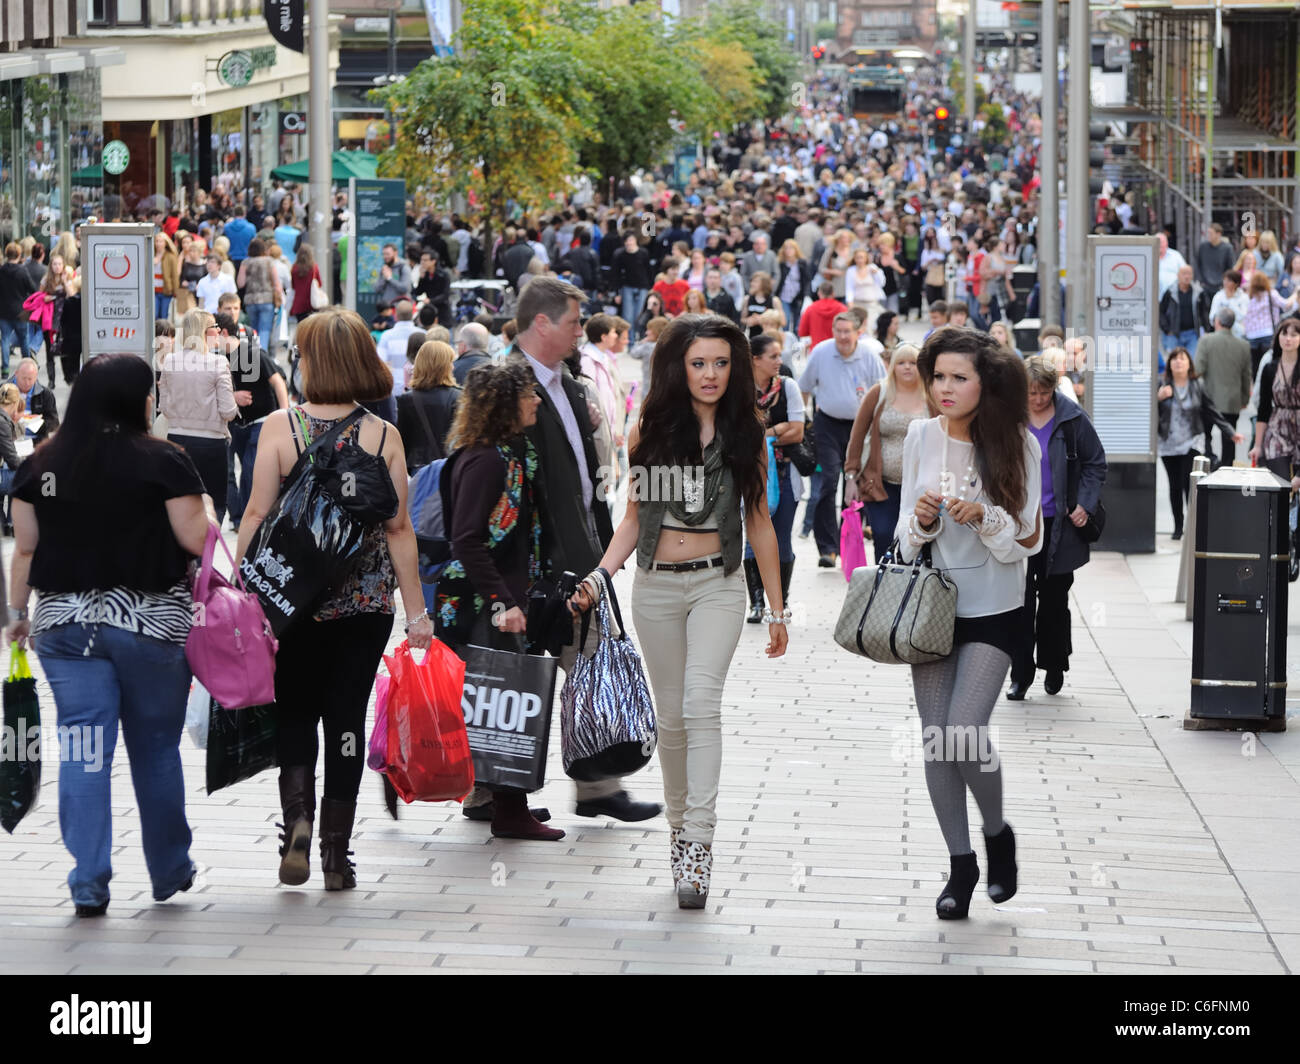 Belebte Straße im Stadtzentrum von Glasgow Schottland. Menschen beim Einkaufen. Stockfoto